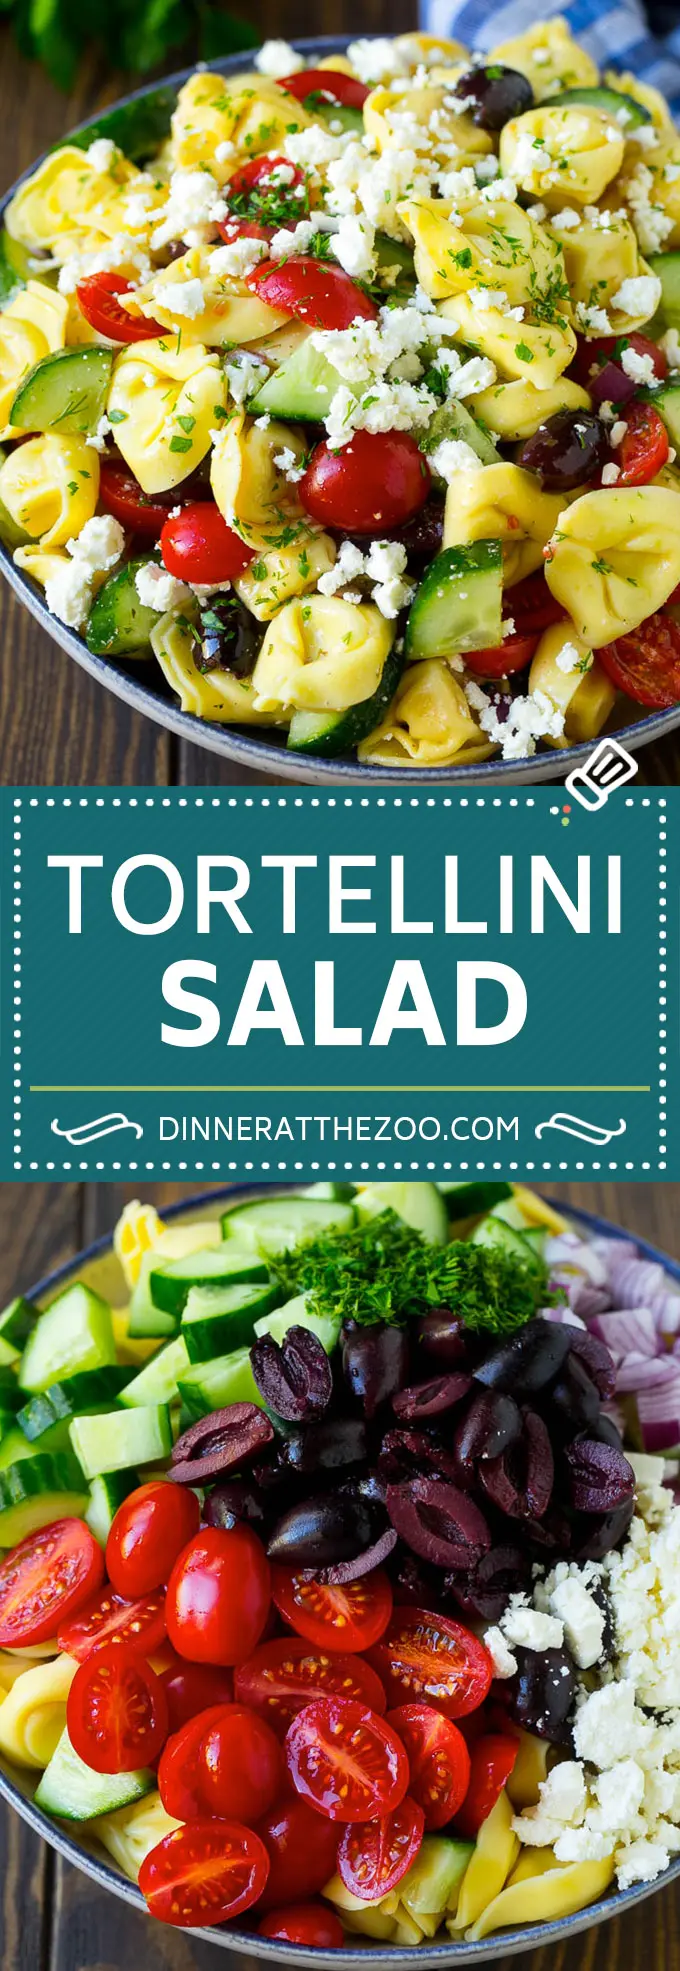 Rețetă de salată grecească de tortellini | Salată de paste | Salată de tortellini | Salată grecească #greek #tortellini #pasta #salată #cucumbri #olive #dinner #dinneratthezoo